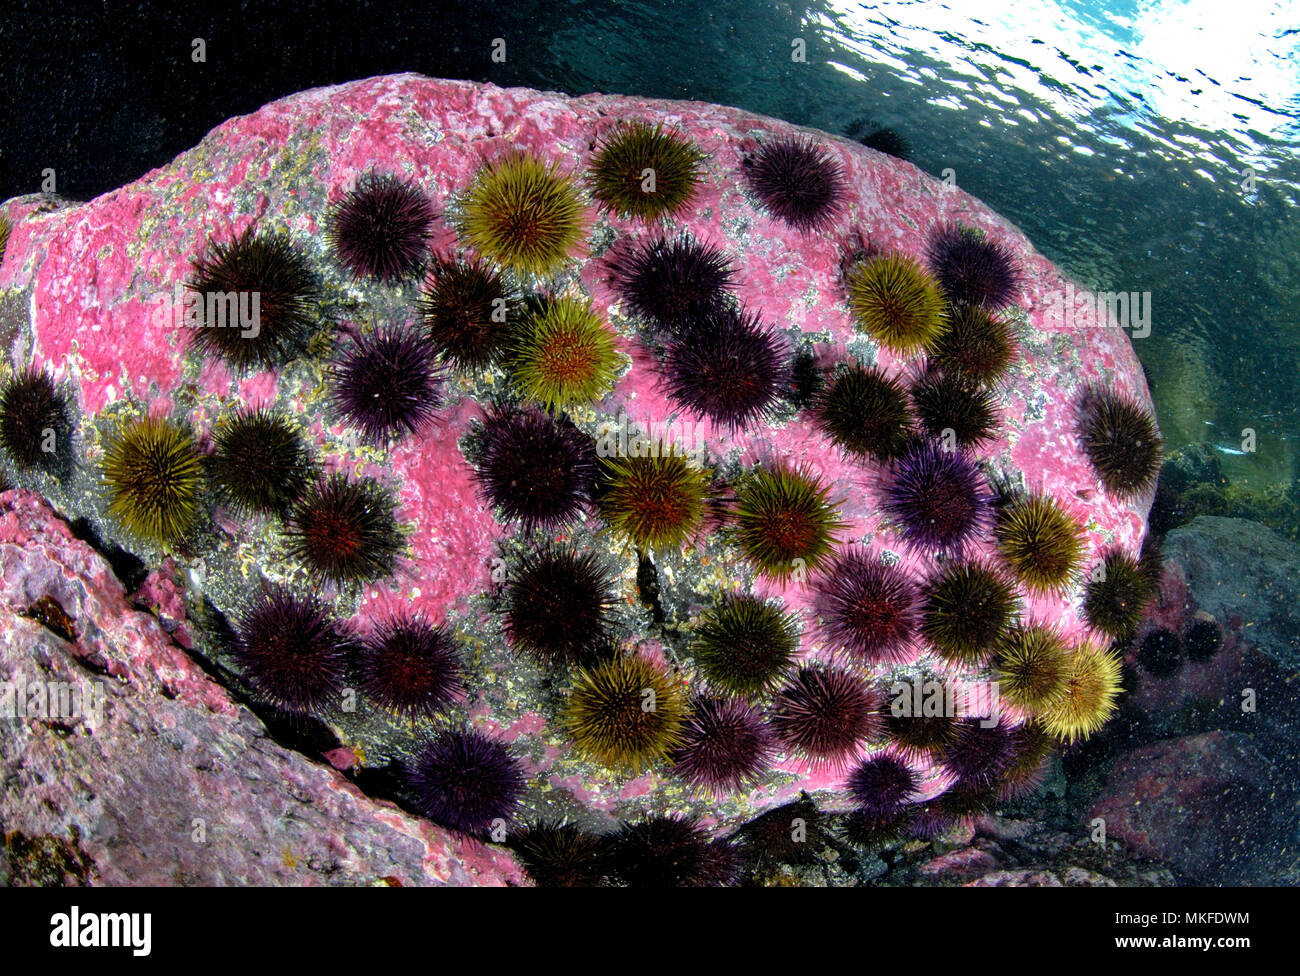 Erizo de mar púrpura (Sphaerechinus granularis) sobre roca, Lanzarote, Islas Canarias. Foto de stock